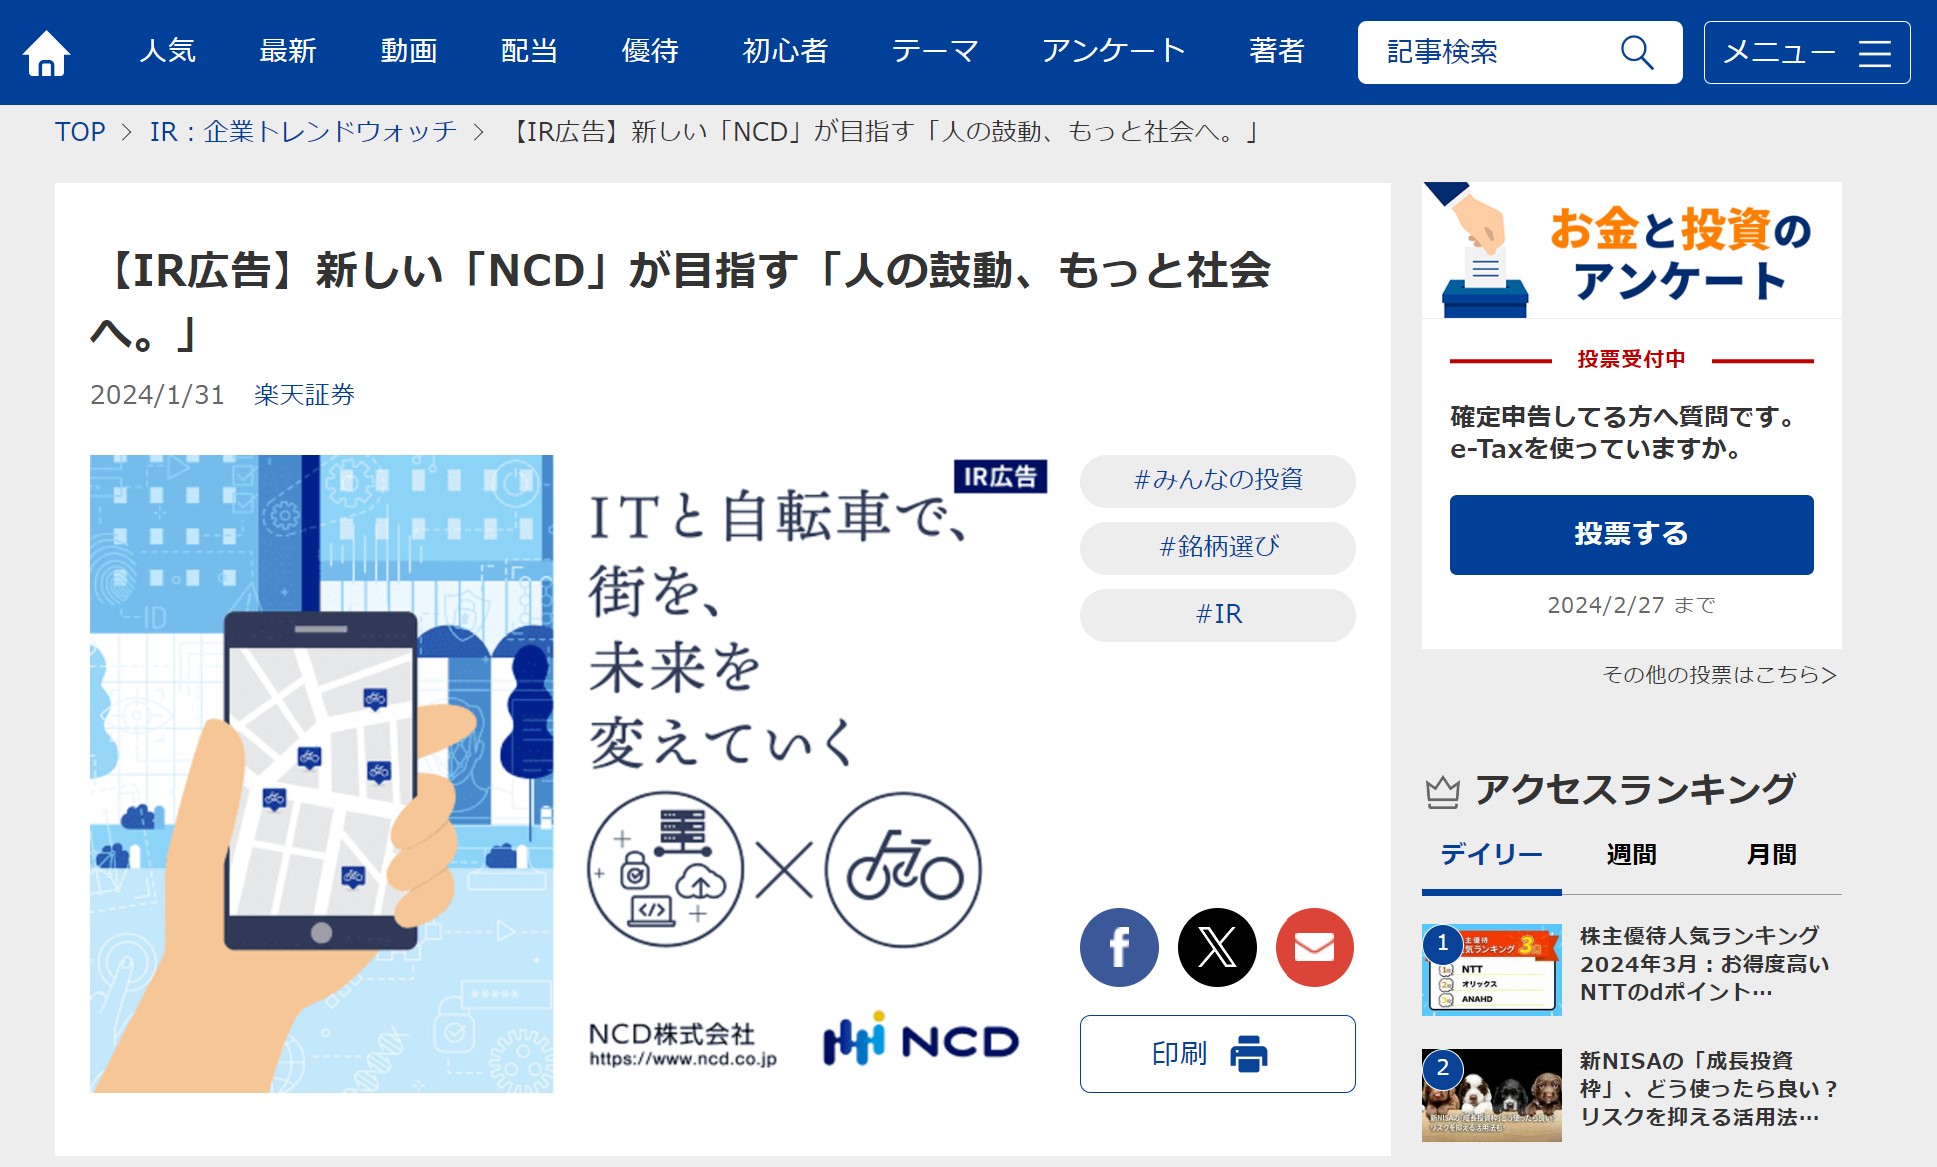 NCD楽天証券への広告掲載例